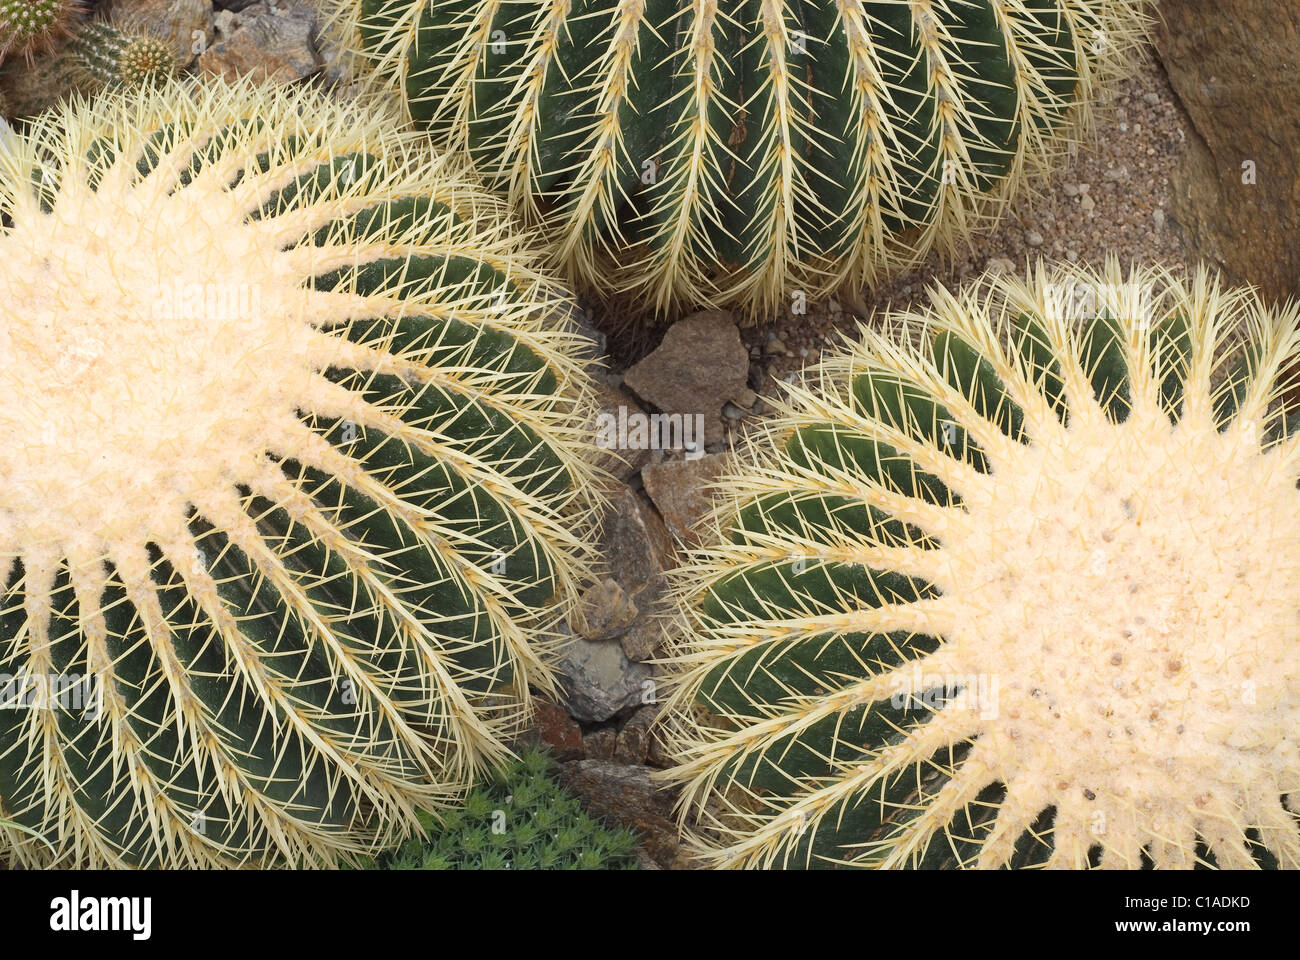 Golden Barrel Cactus native to central Mexico Stock Photo